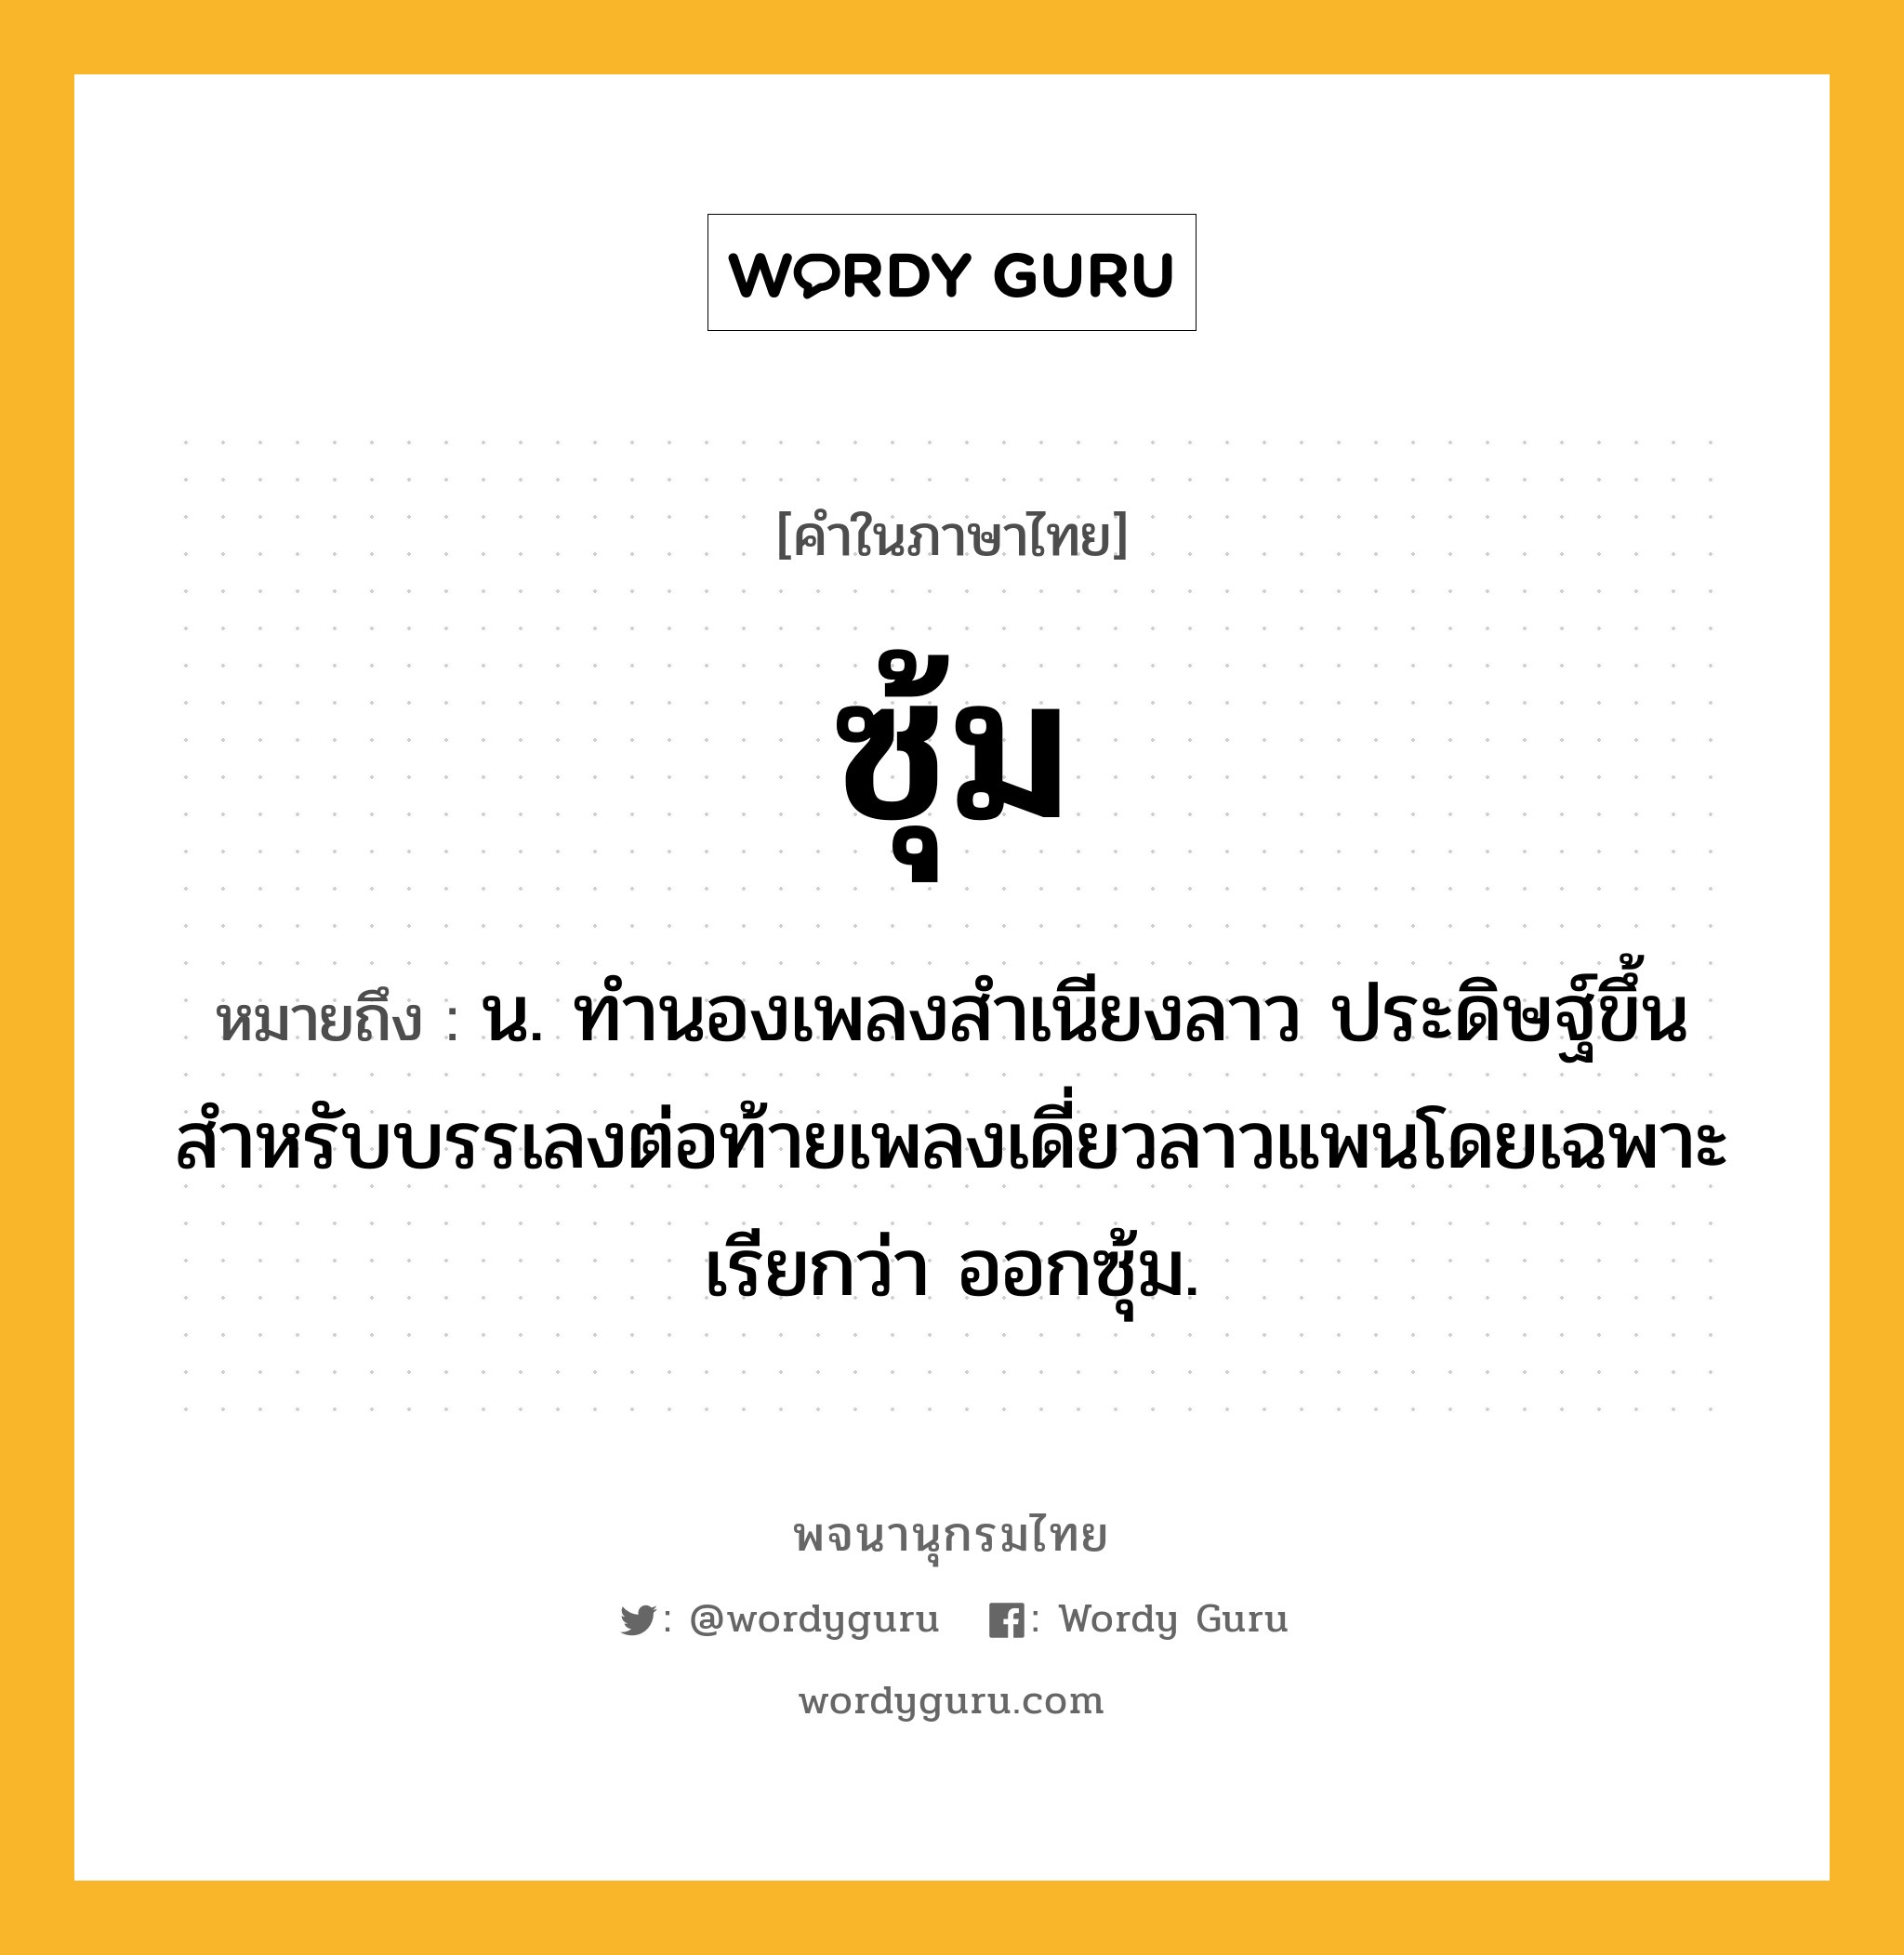 ซุ้ม หมายถึงอะไร?, คำในภาษาไทย ซุ้ม หมายถึง น. ทำนองเพลงสำเนียงลาว ประดิษฐ์ขึ้นสำหรับบรรเลงต่อท้ายเพลงเดี่ยวลาวแพนโดยเฉพาะ เรียกว่า ออกซุ้ม.